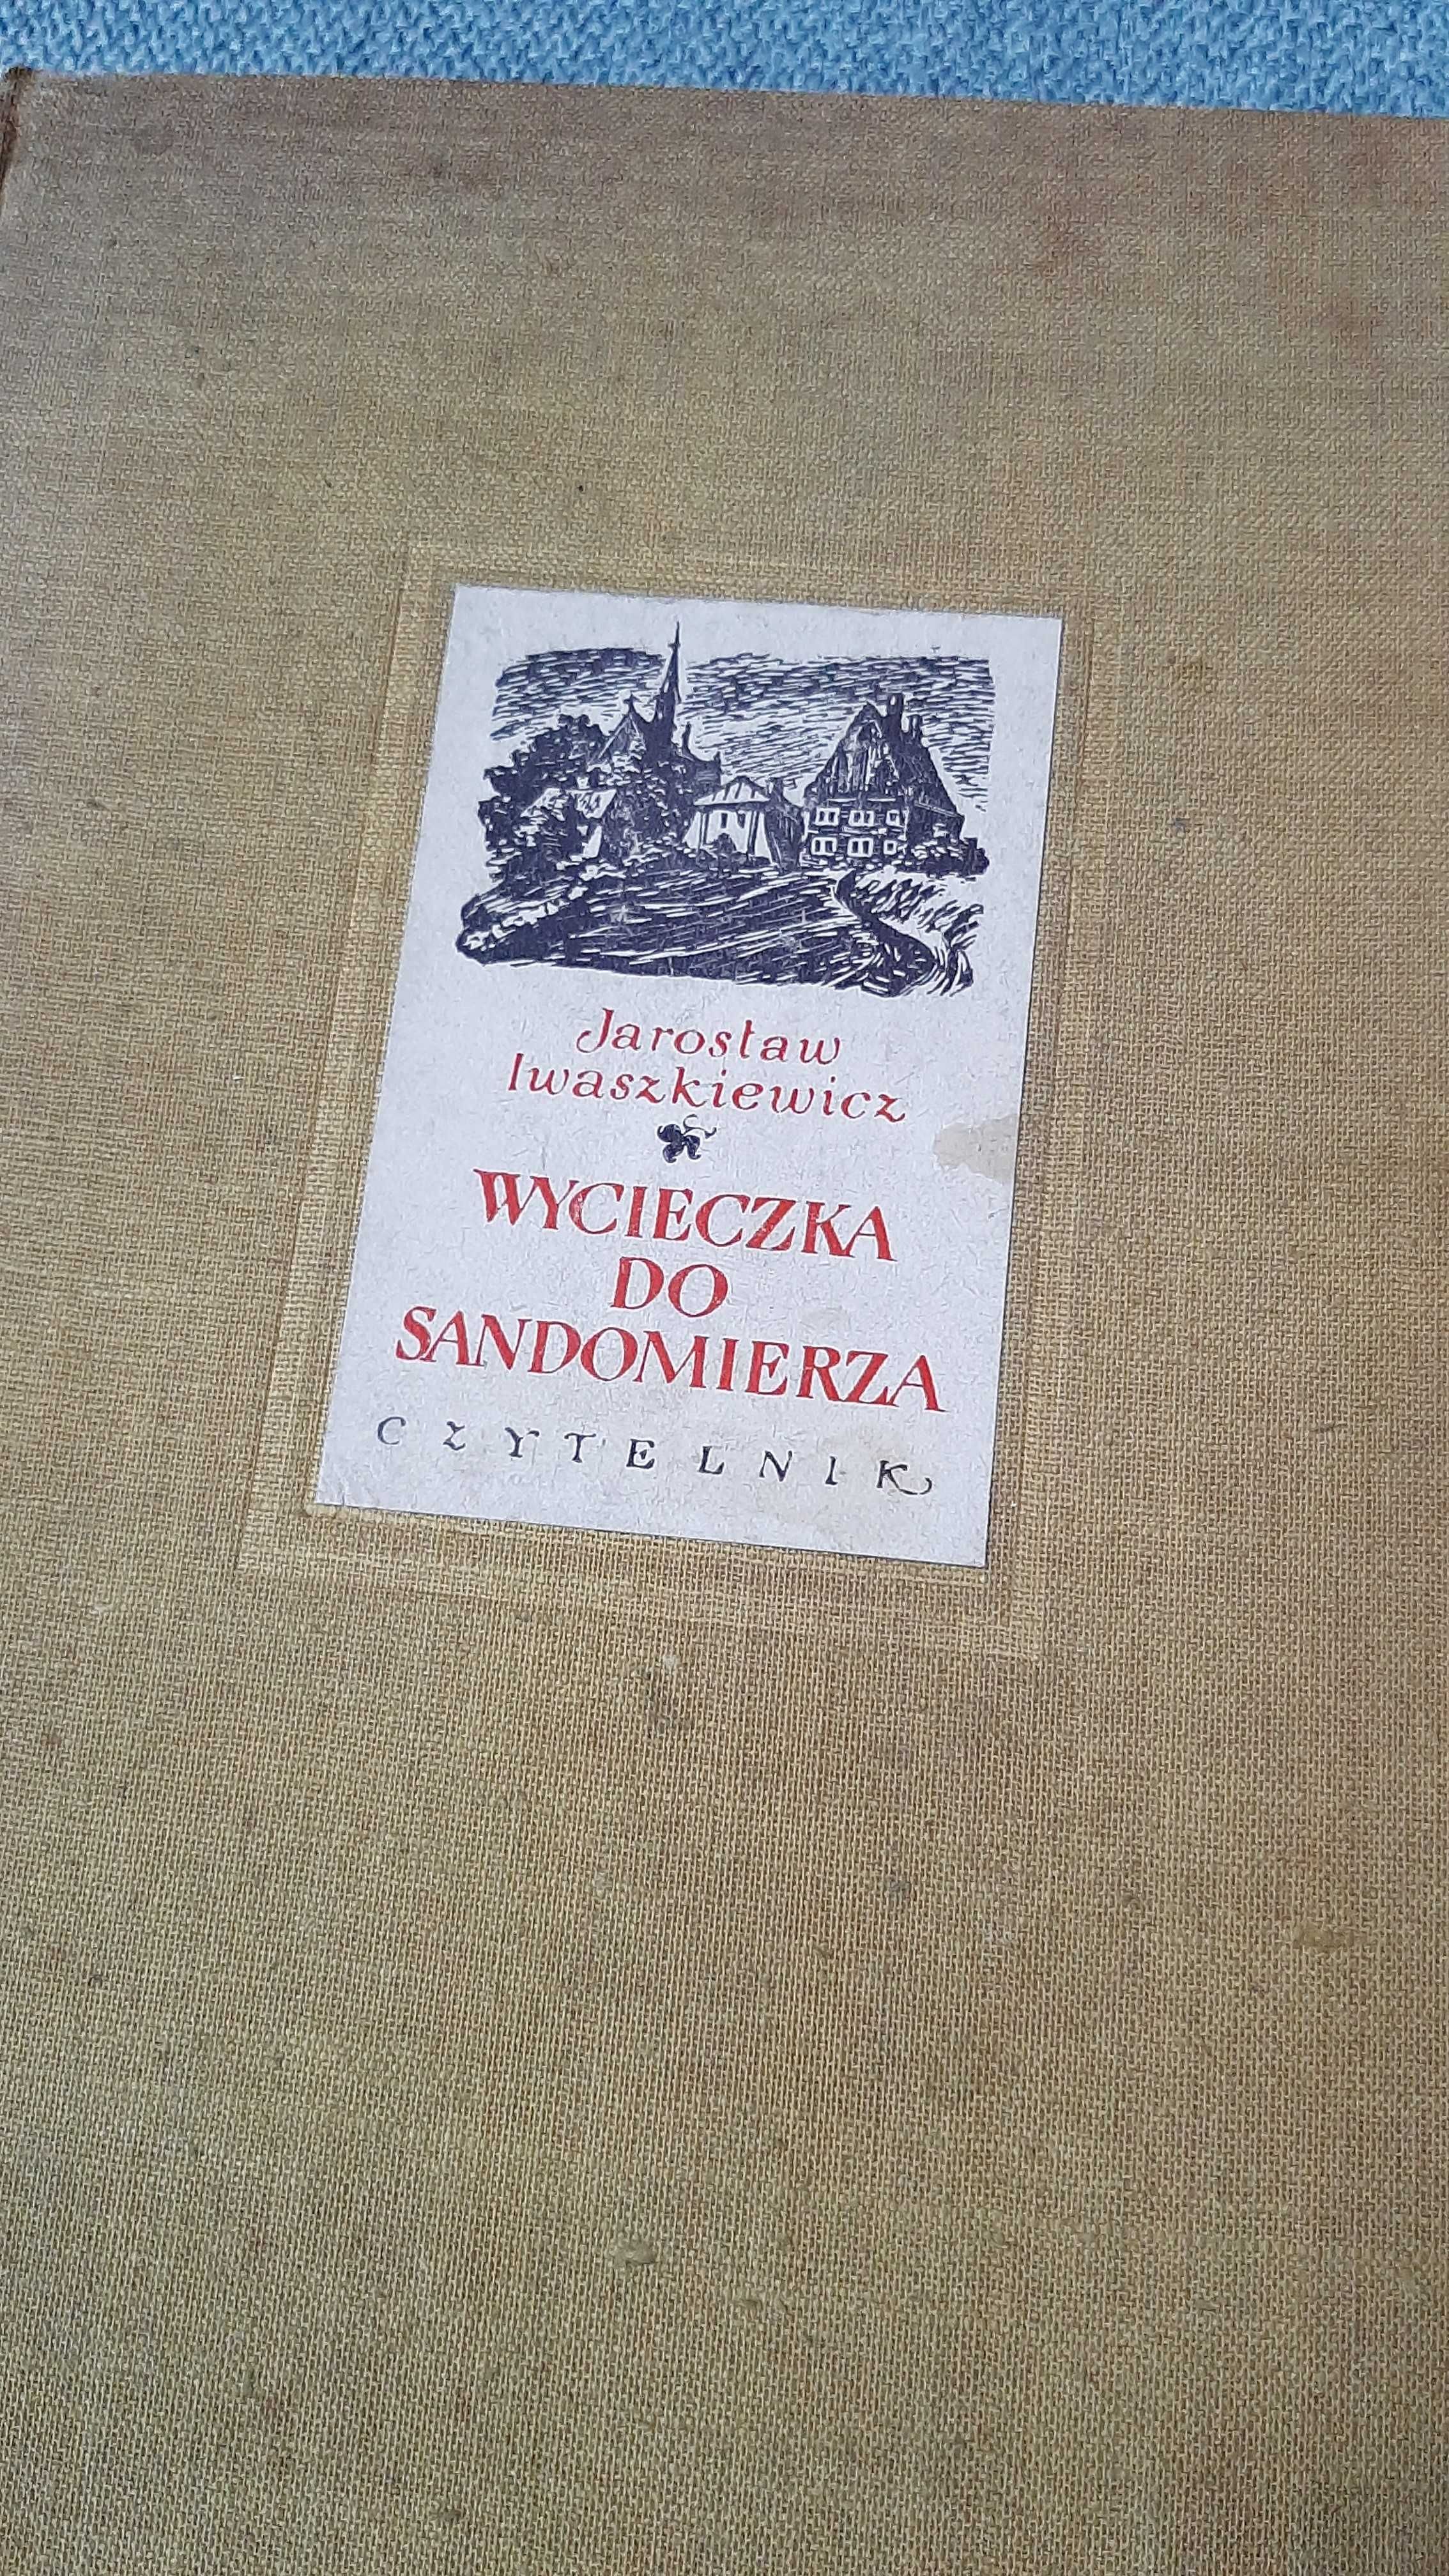 Wycieczka do Sandomierza powieść Jarosław Iwaszkiewicz 1953 Czytelnik